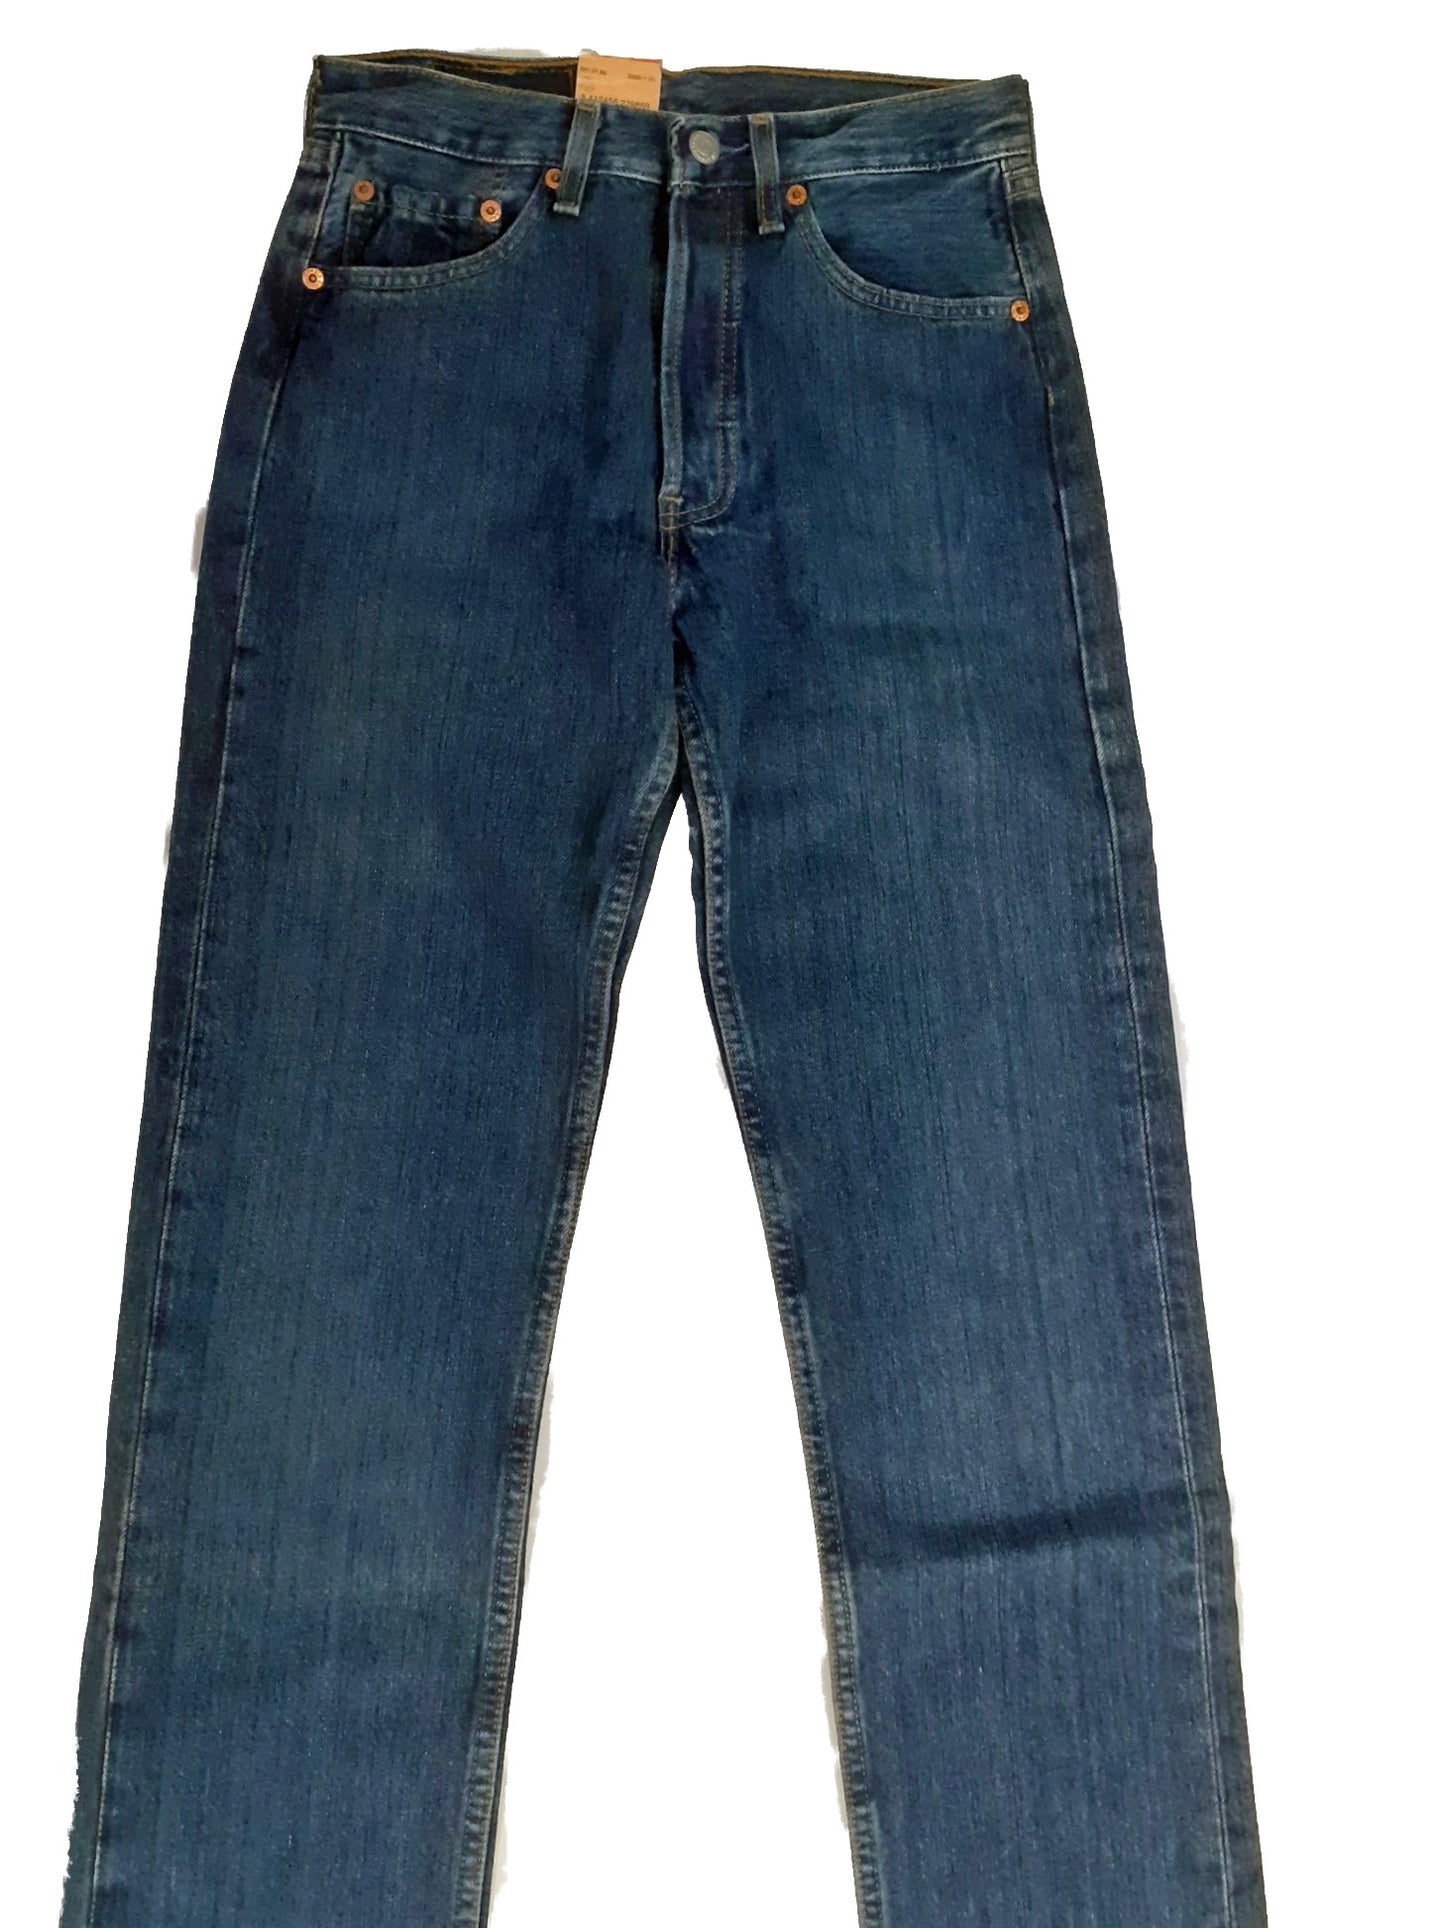 Levi's Jeans 501 01 89 Medio